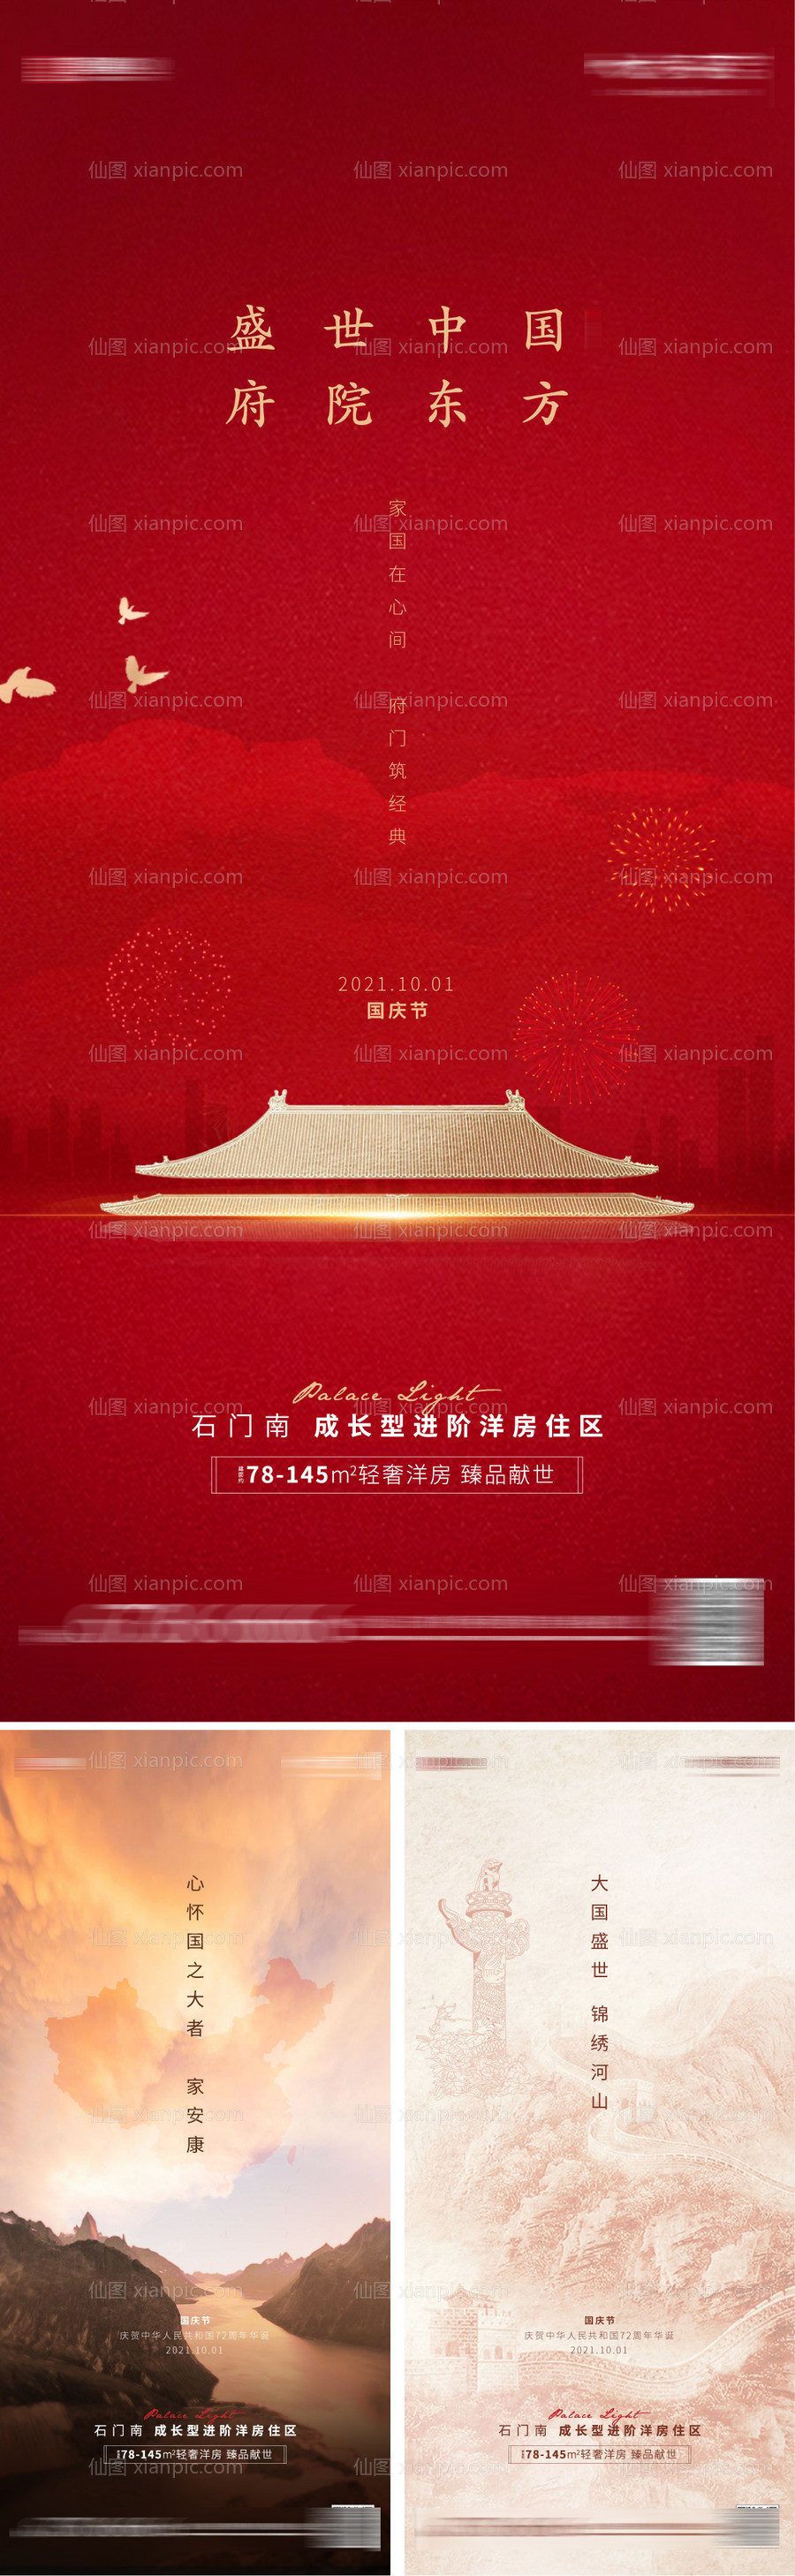 素材乐-中式房地产国庆节系列海报